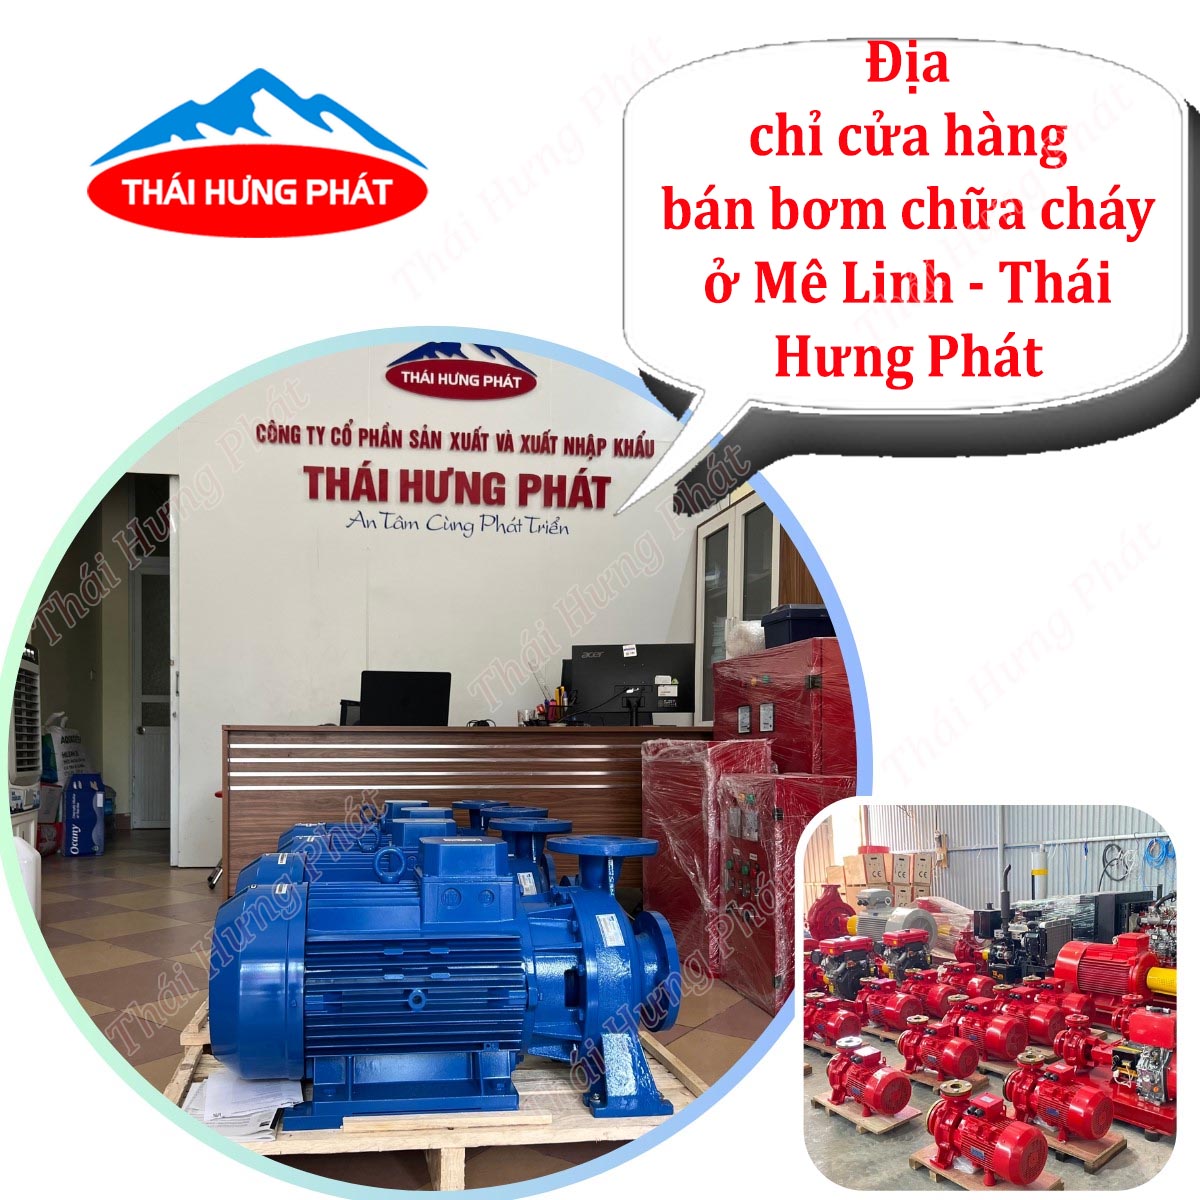 Cửa hàng bán máy bơm PCCC giá rẻ ở Mê Linh uy tín, chất lượng